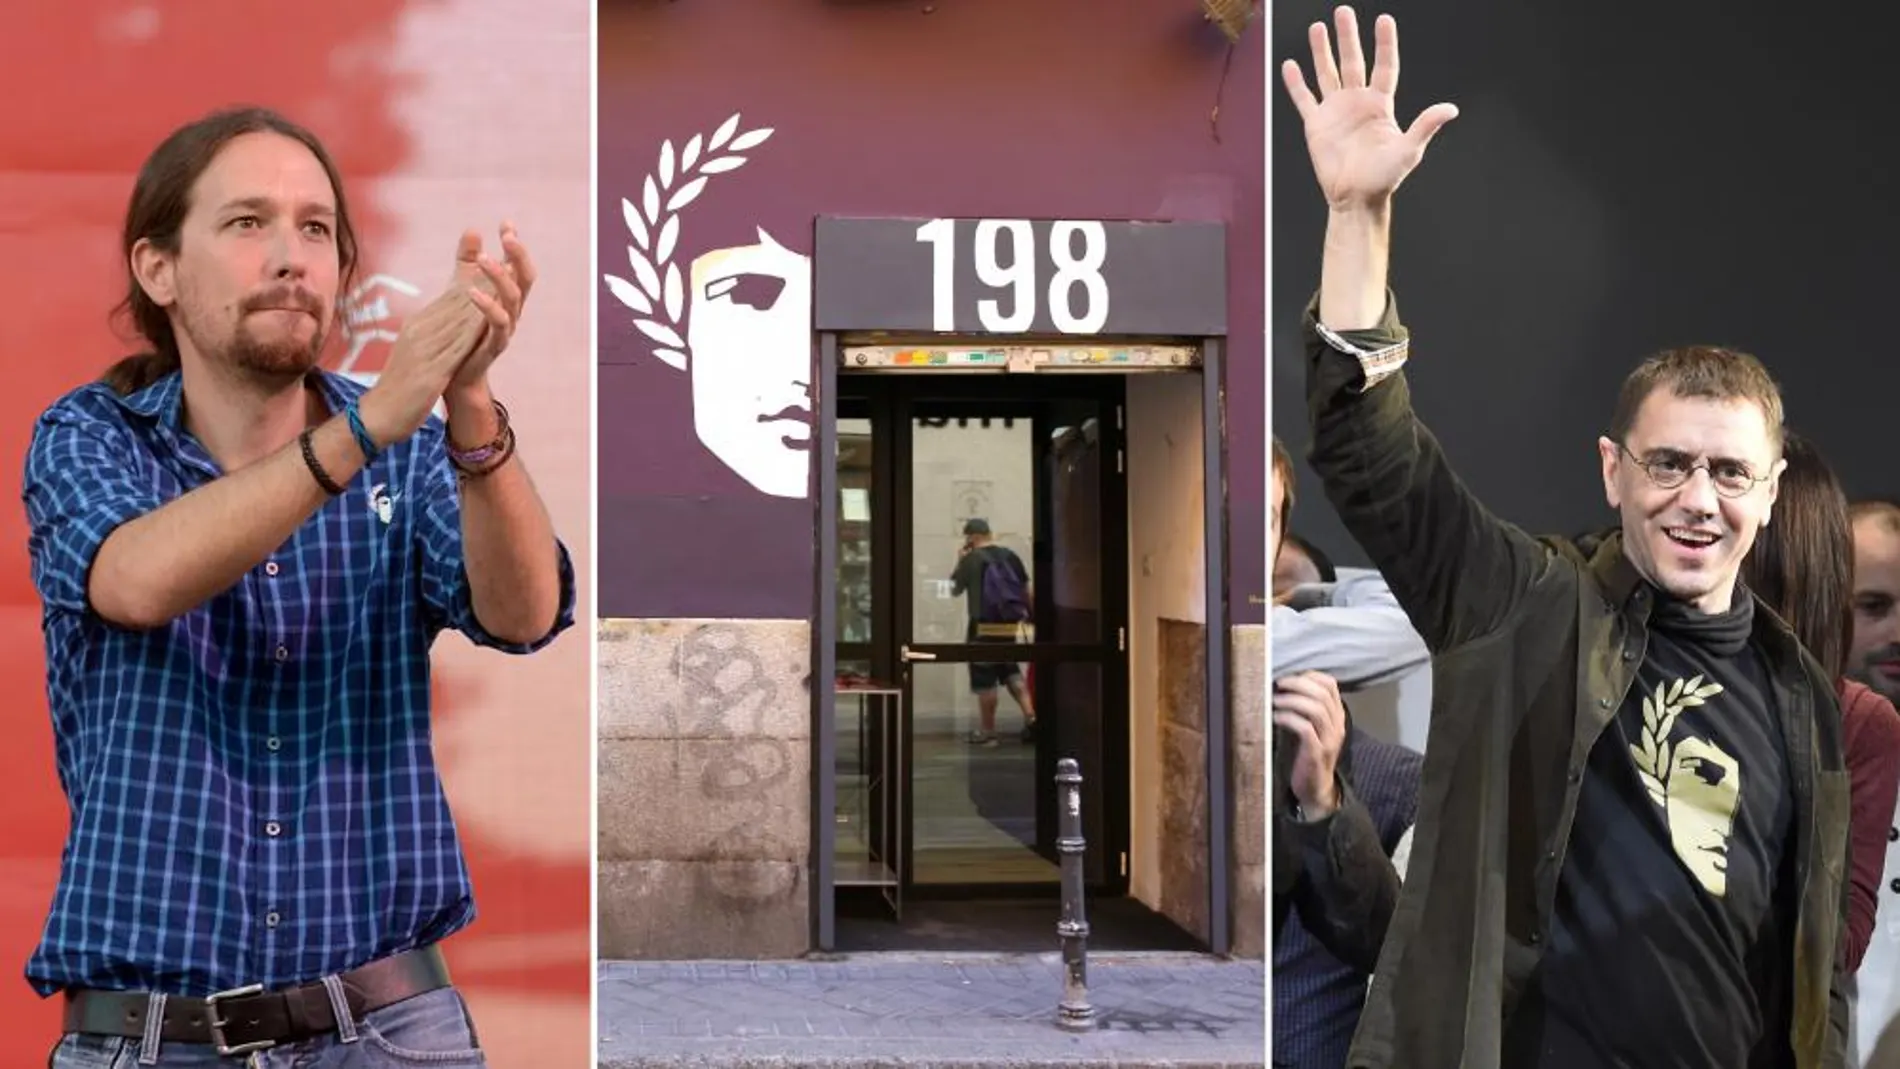 A lz izquierda, Pablo Iglesias con una camisa de 198; en el centro, la tienda de Madrid; a la derecha, Juan Carlos Monedero con una camiseta de la marca.